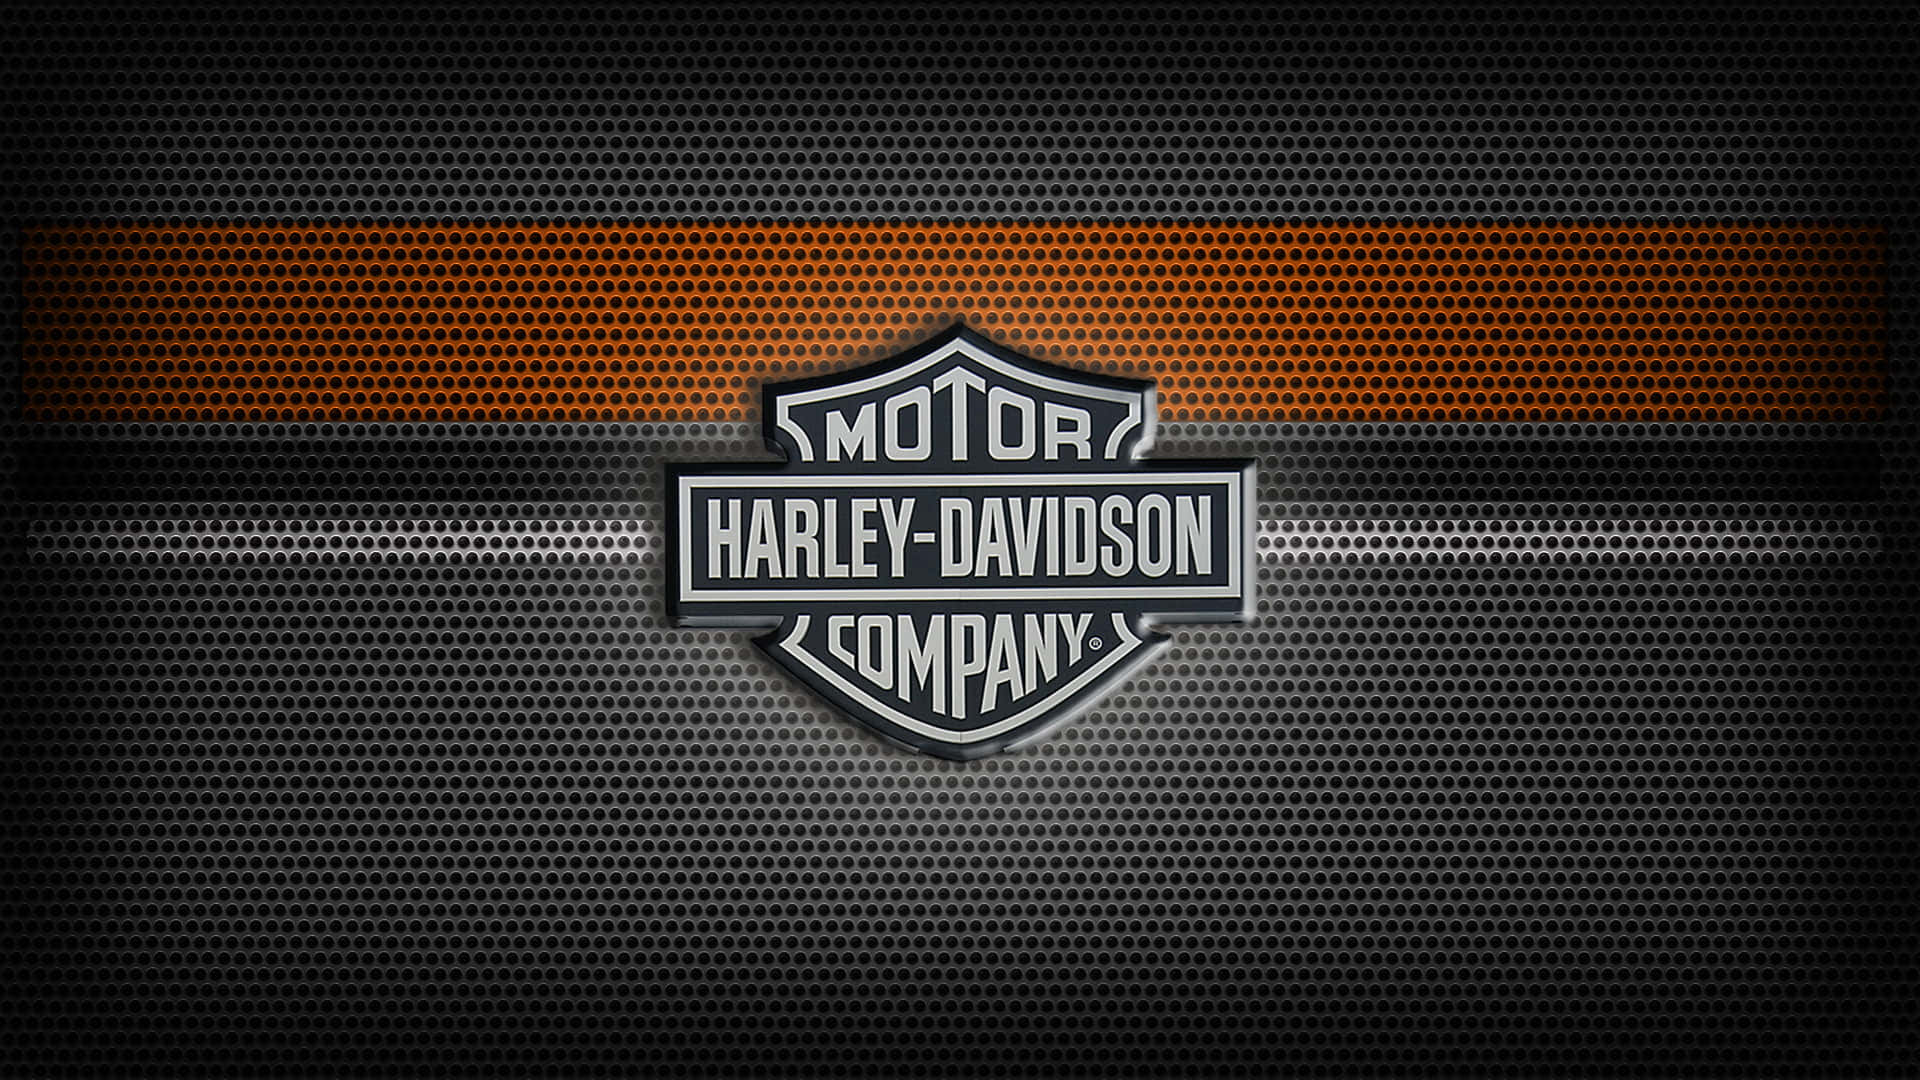 Harleydavidson Motorrad Metallic-logo Hintergrund